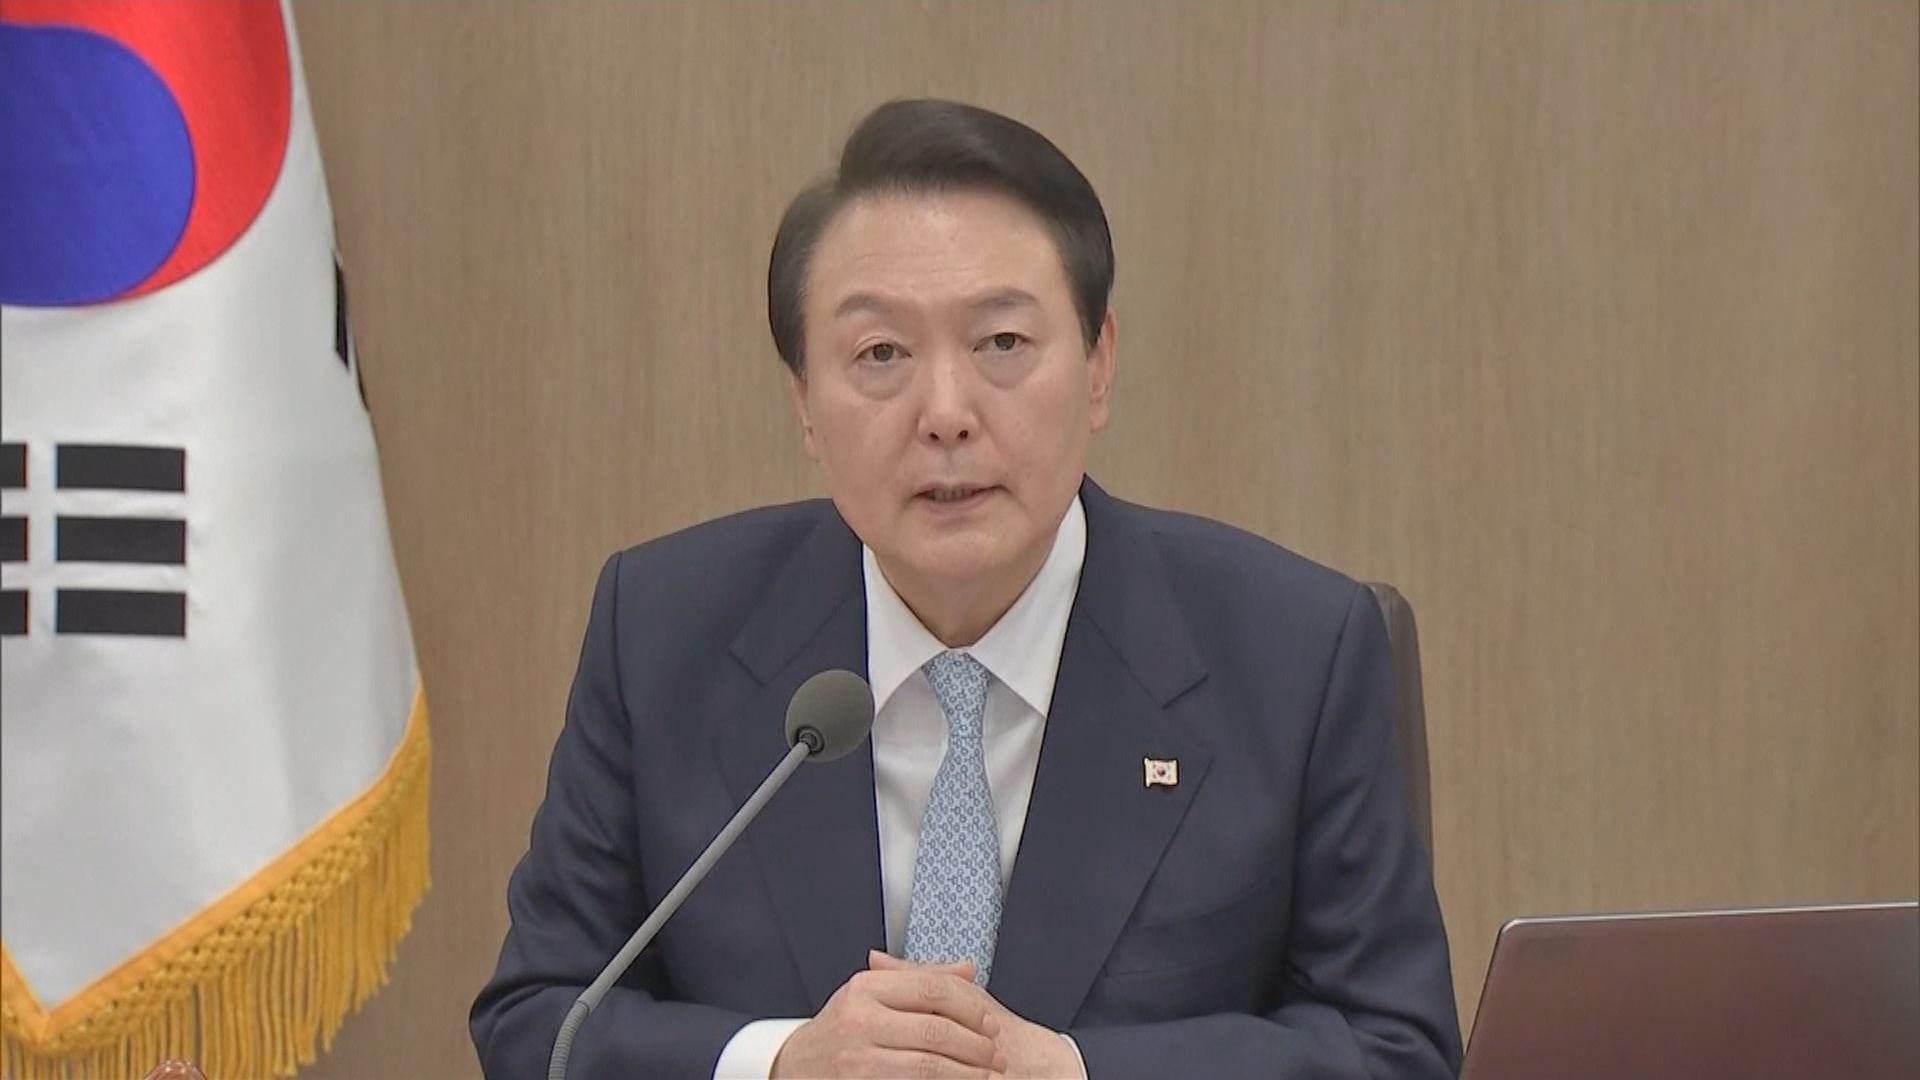 南韓國會選舉執政黨失利 總統尹錫悅說接受選舉結果